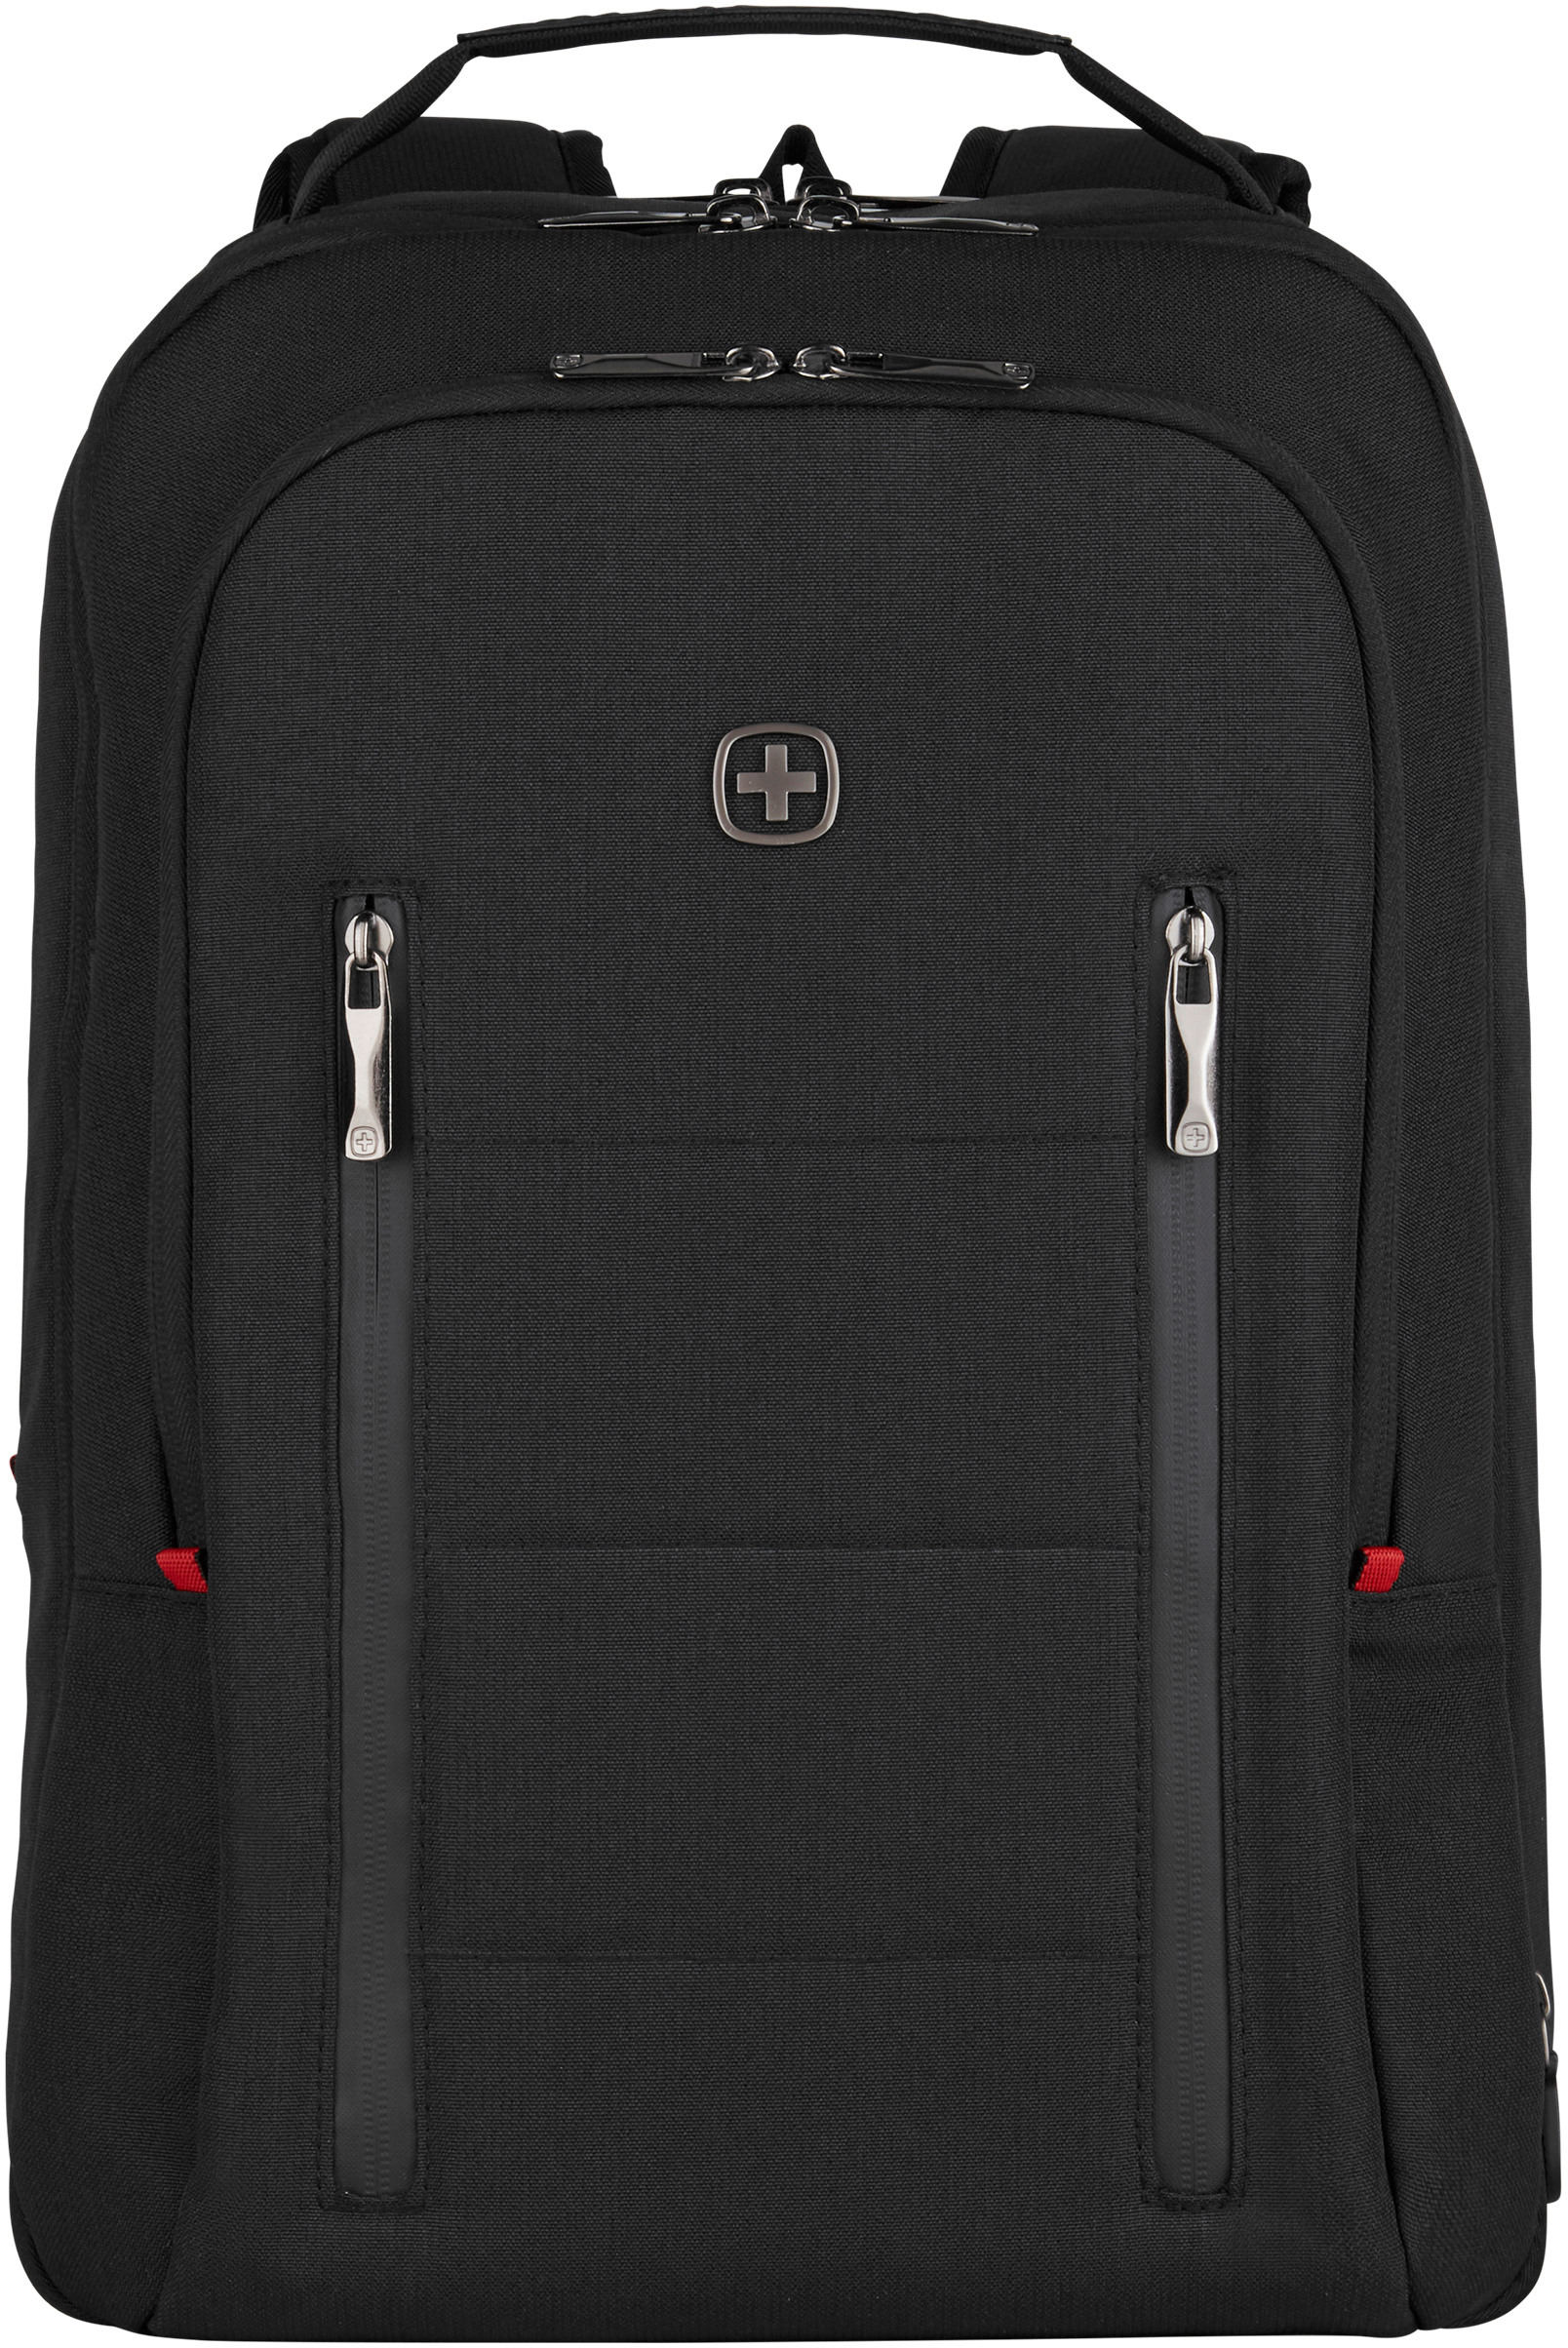 WENGER City Traveler 606490 Laptop Backpack 16 Zoll